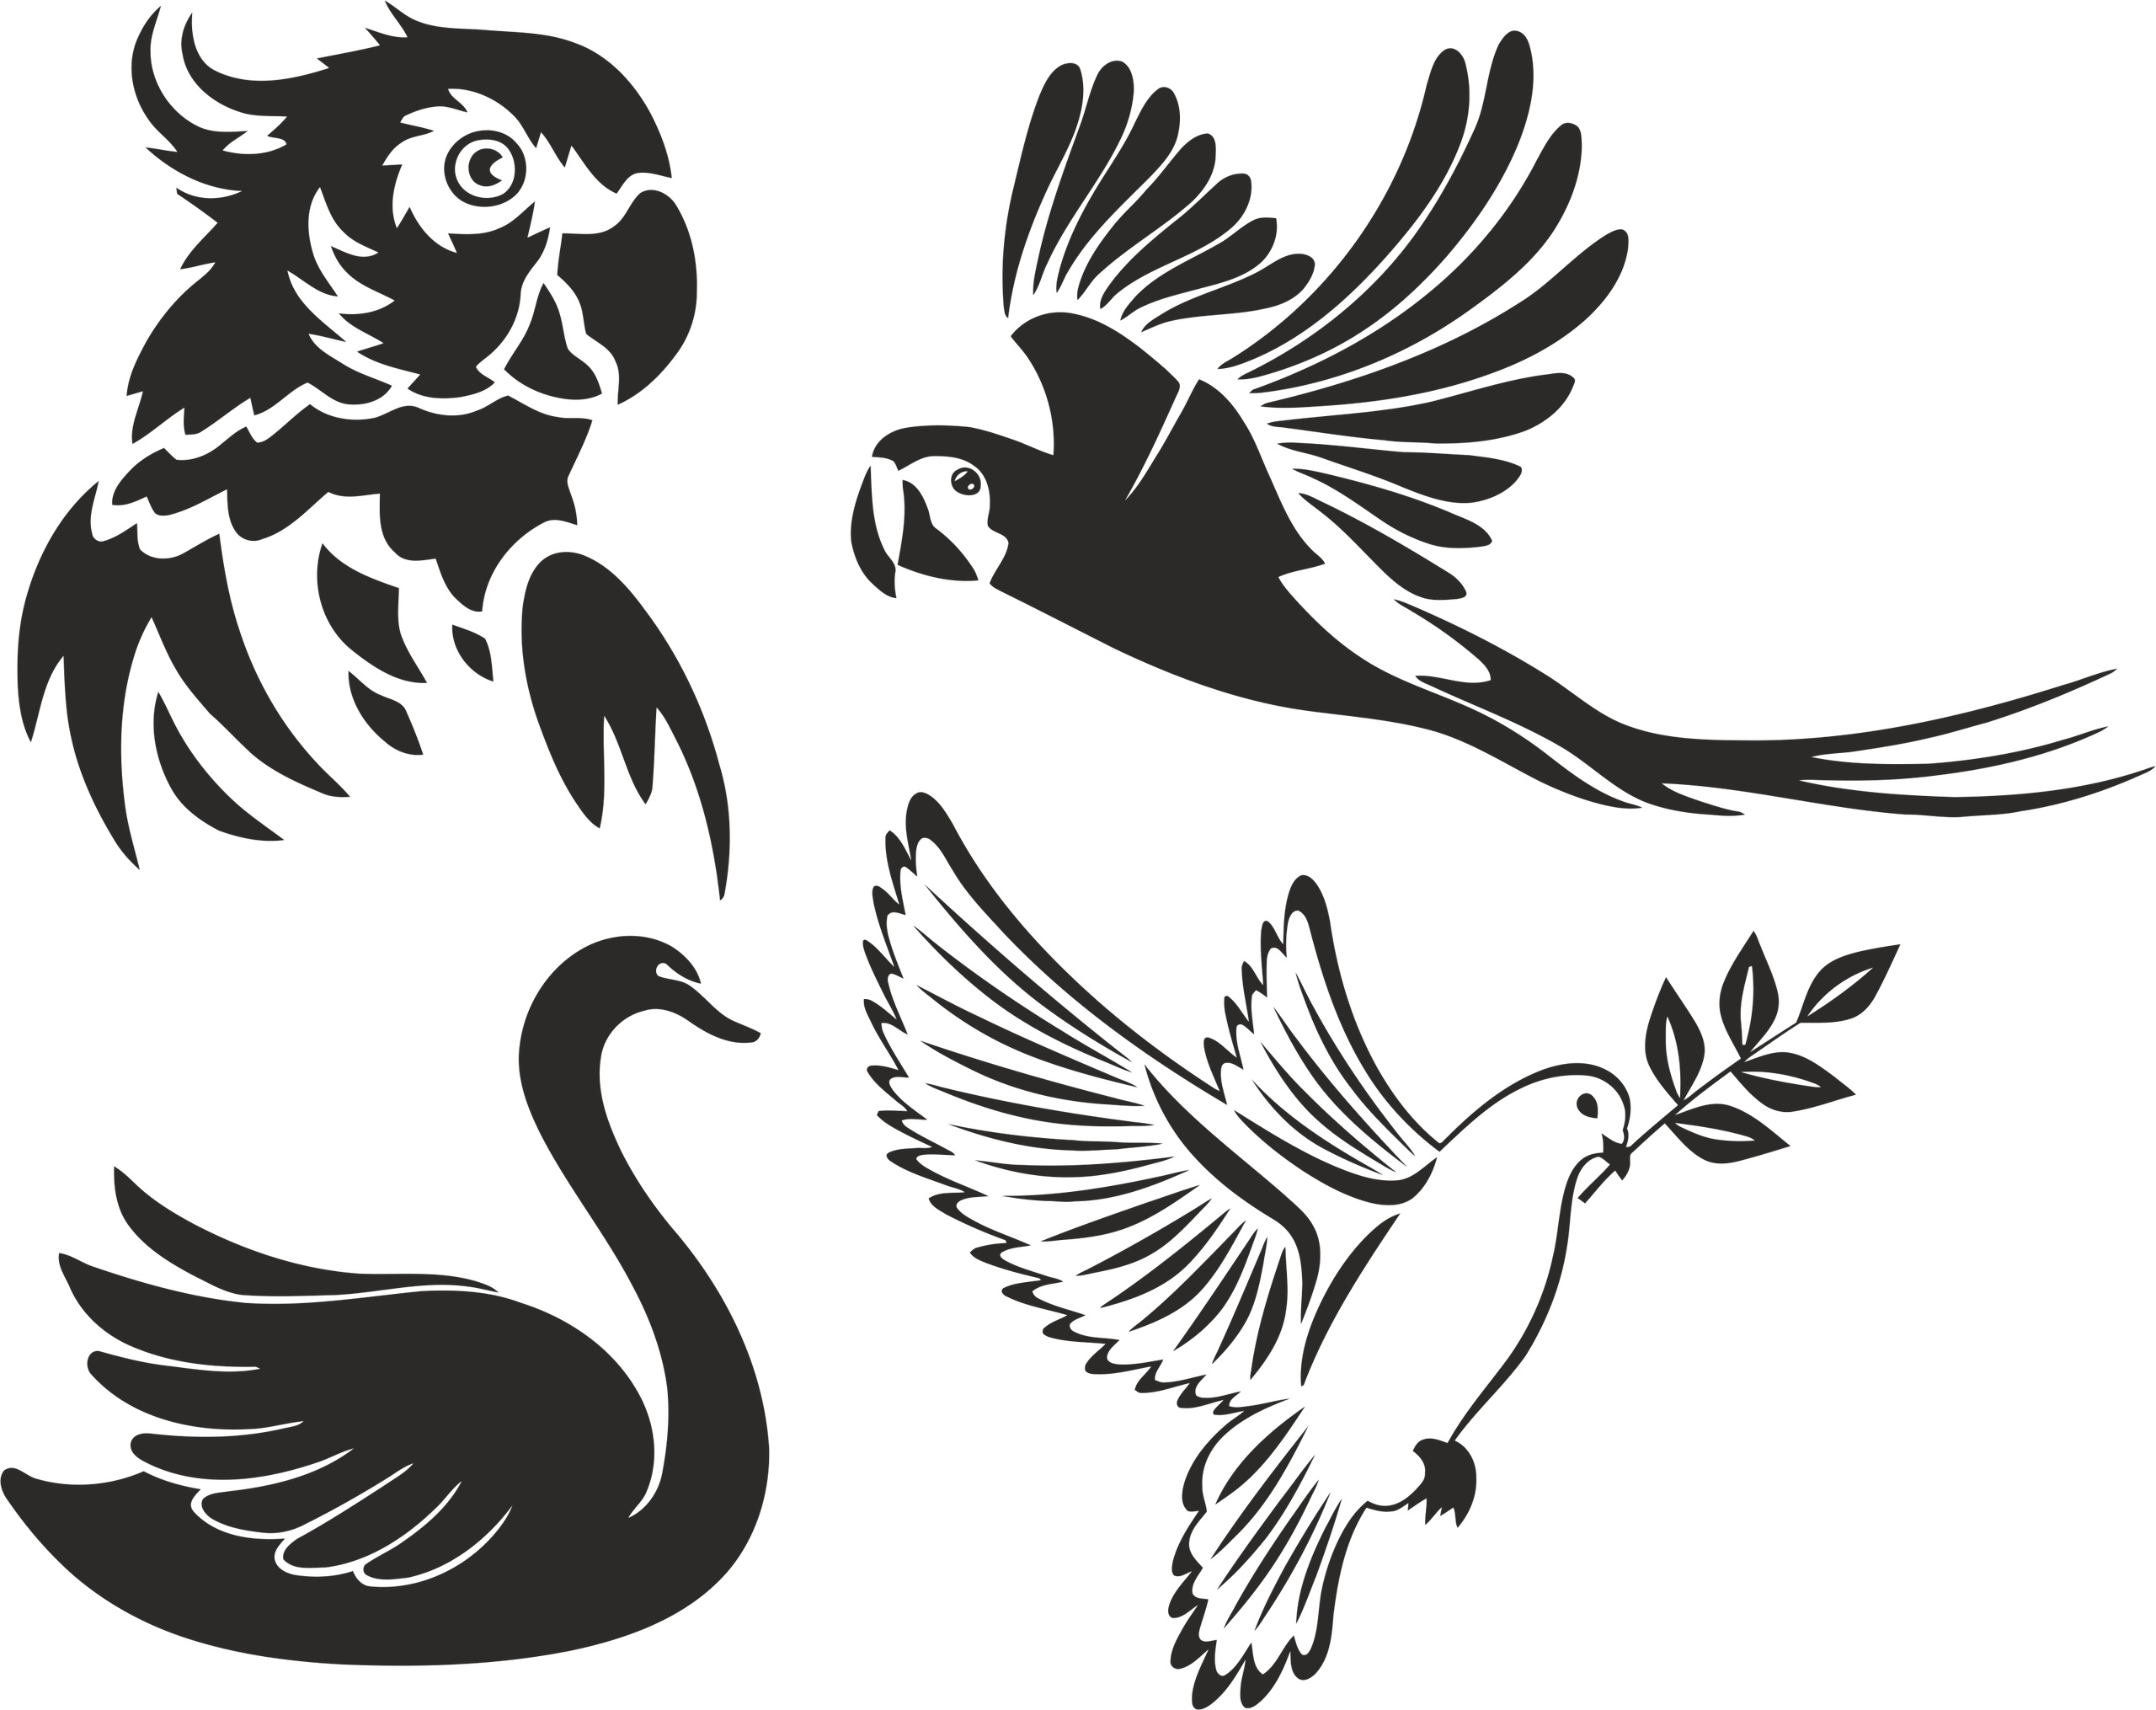 Birds Stencils Free Vector cdr Download - 3axis.co